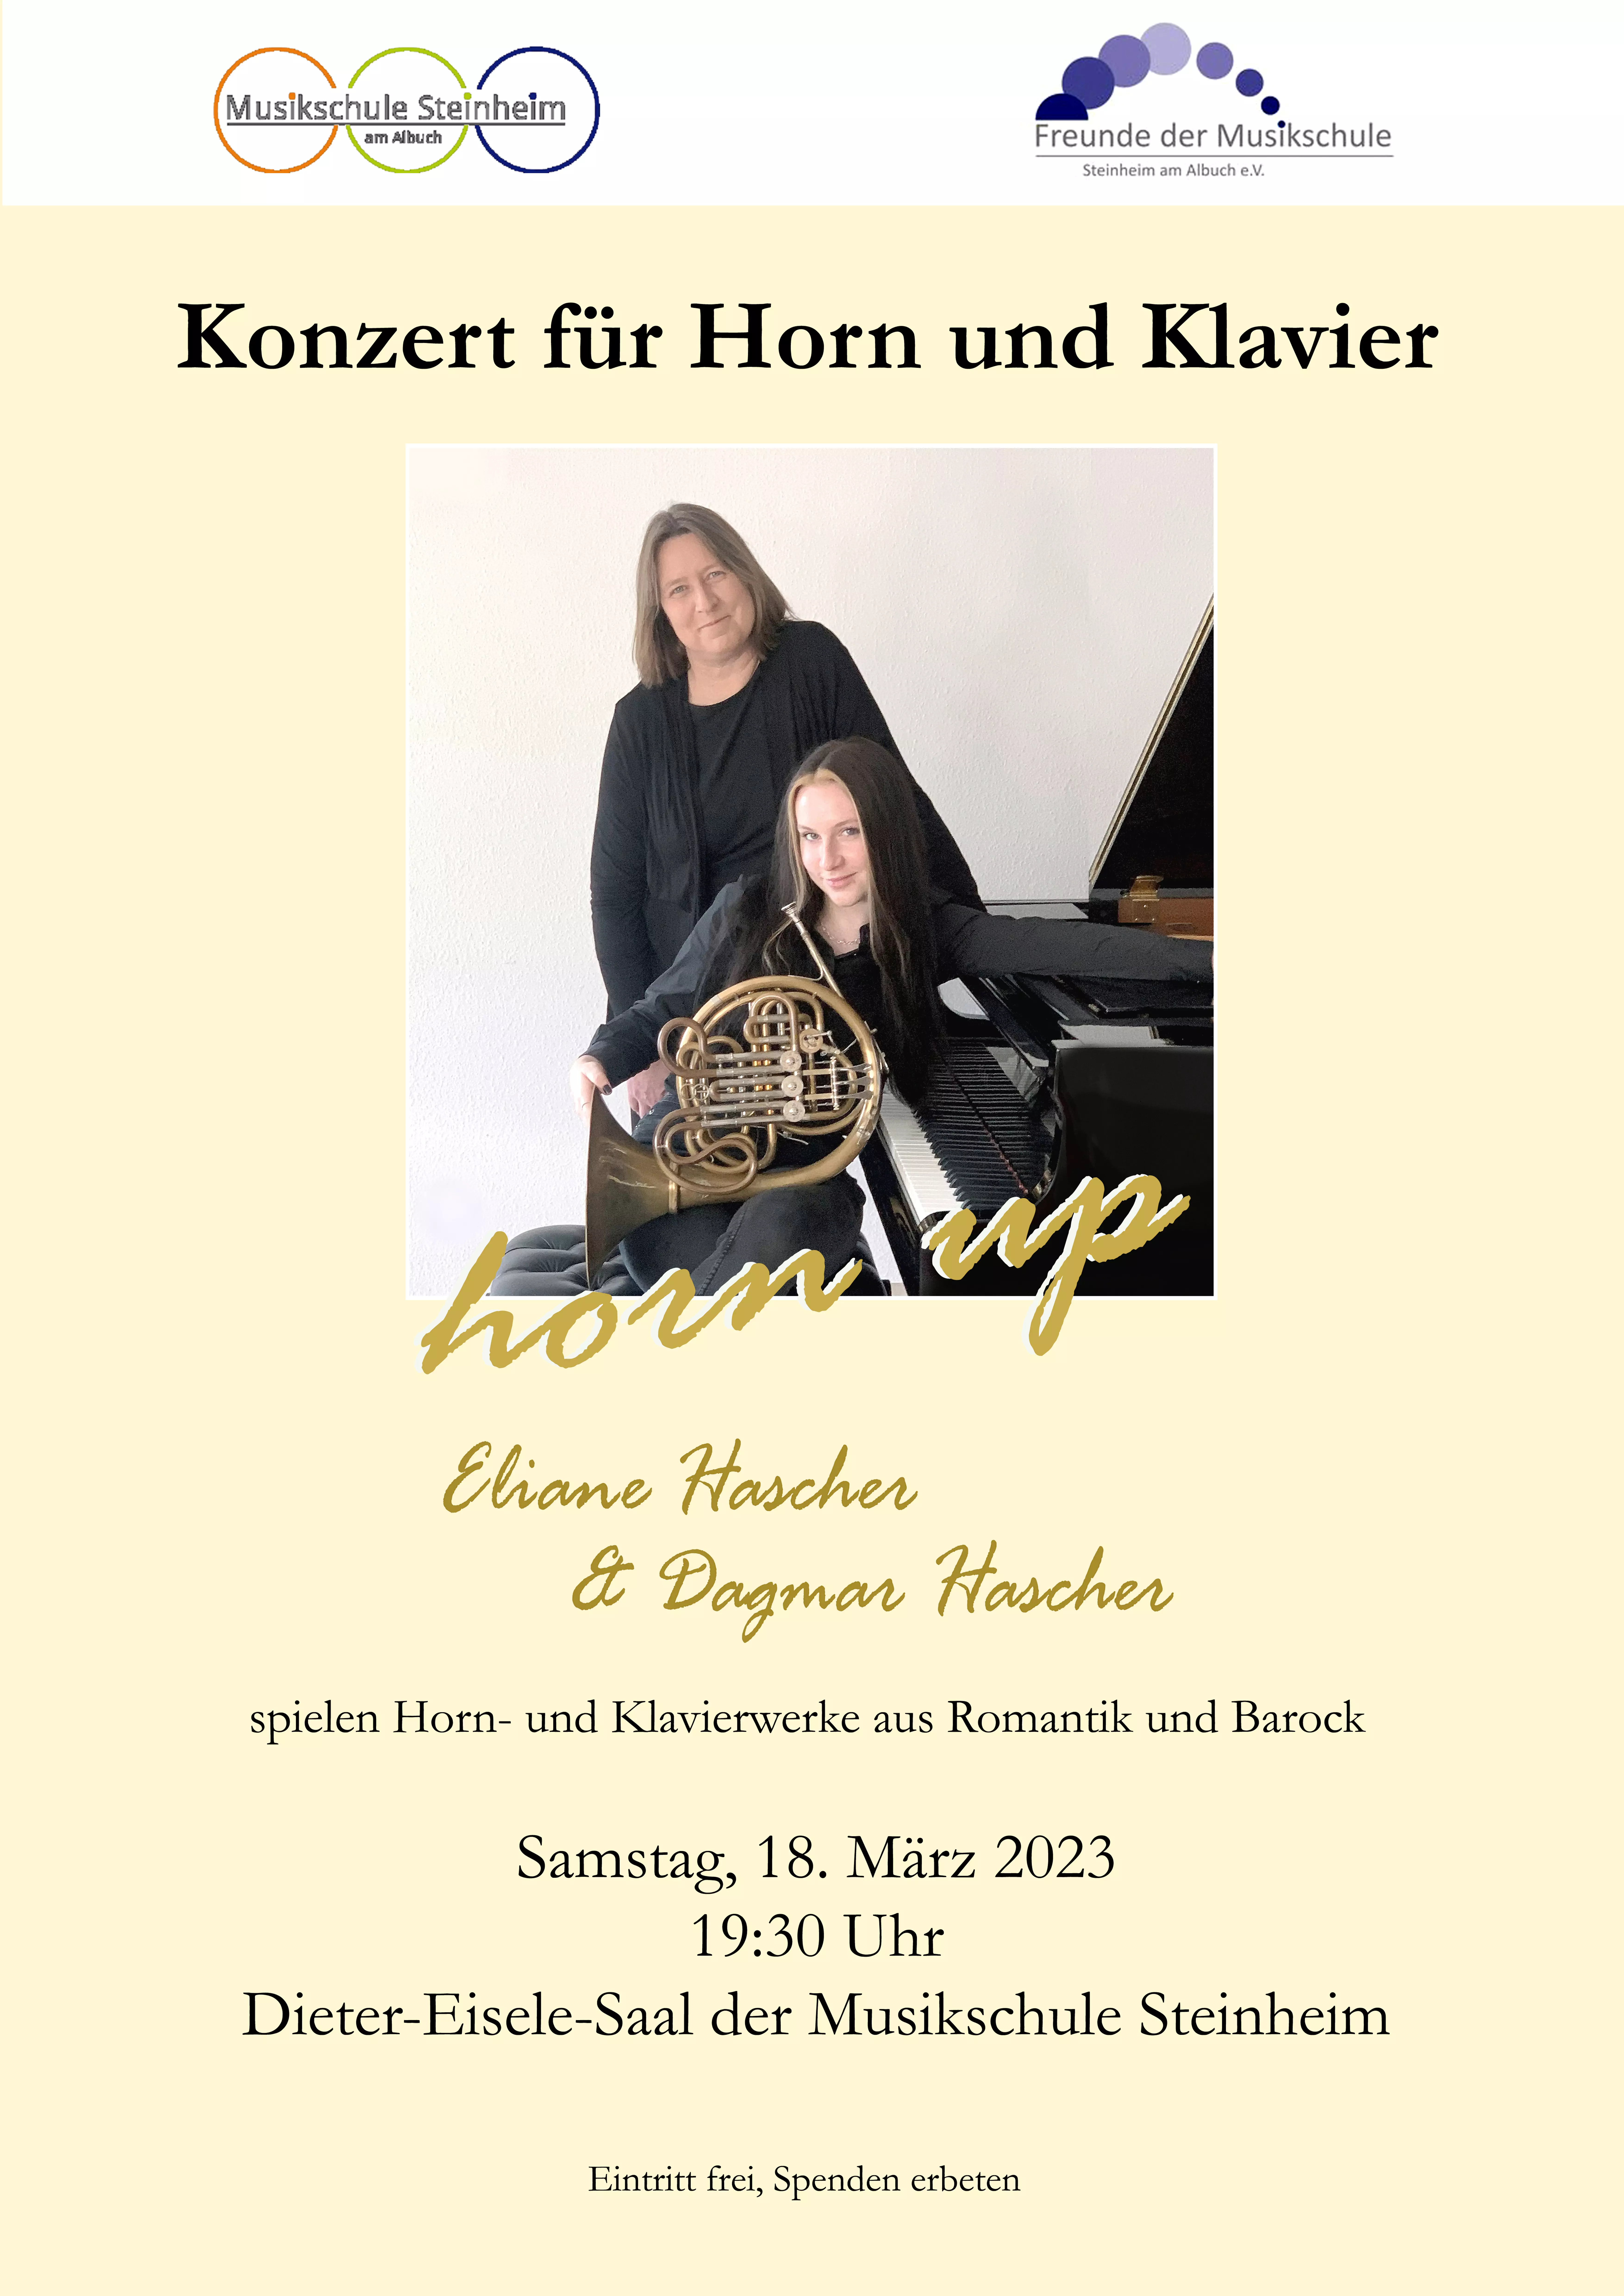 "horn up" Konzert für Horn und Klavier